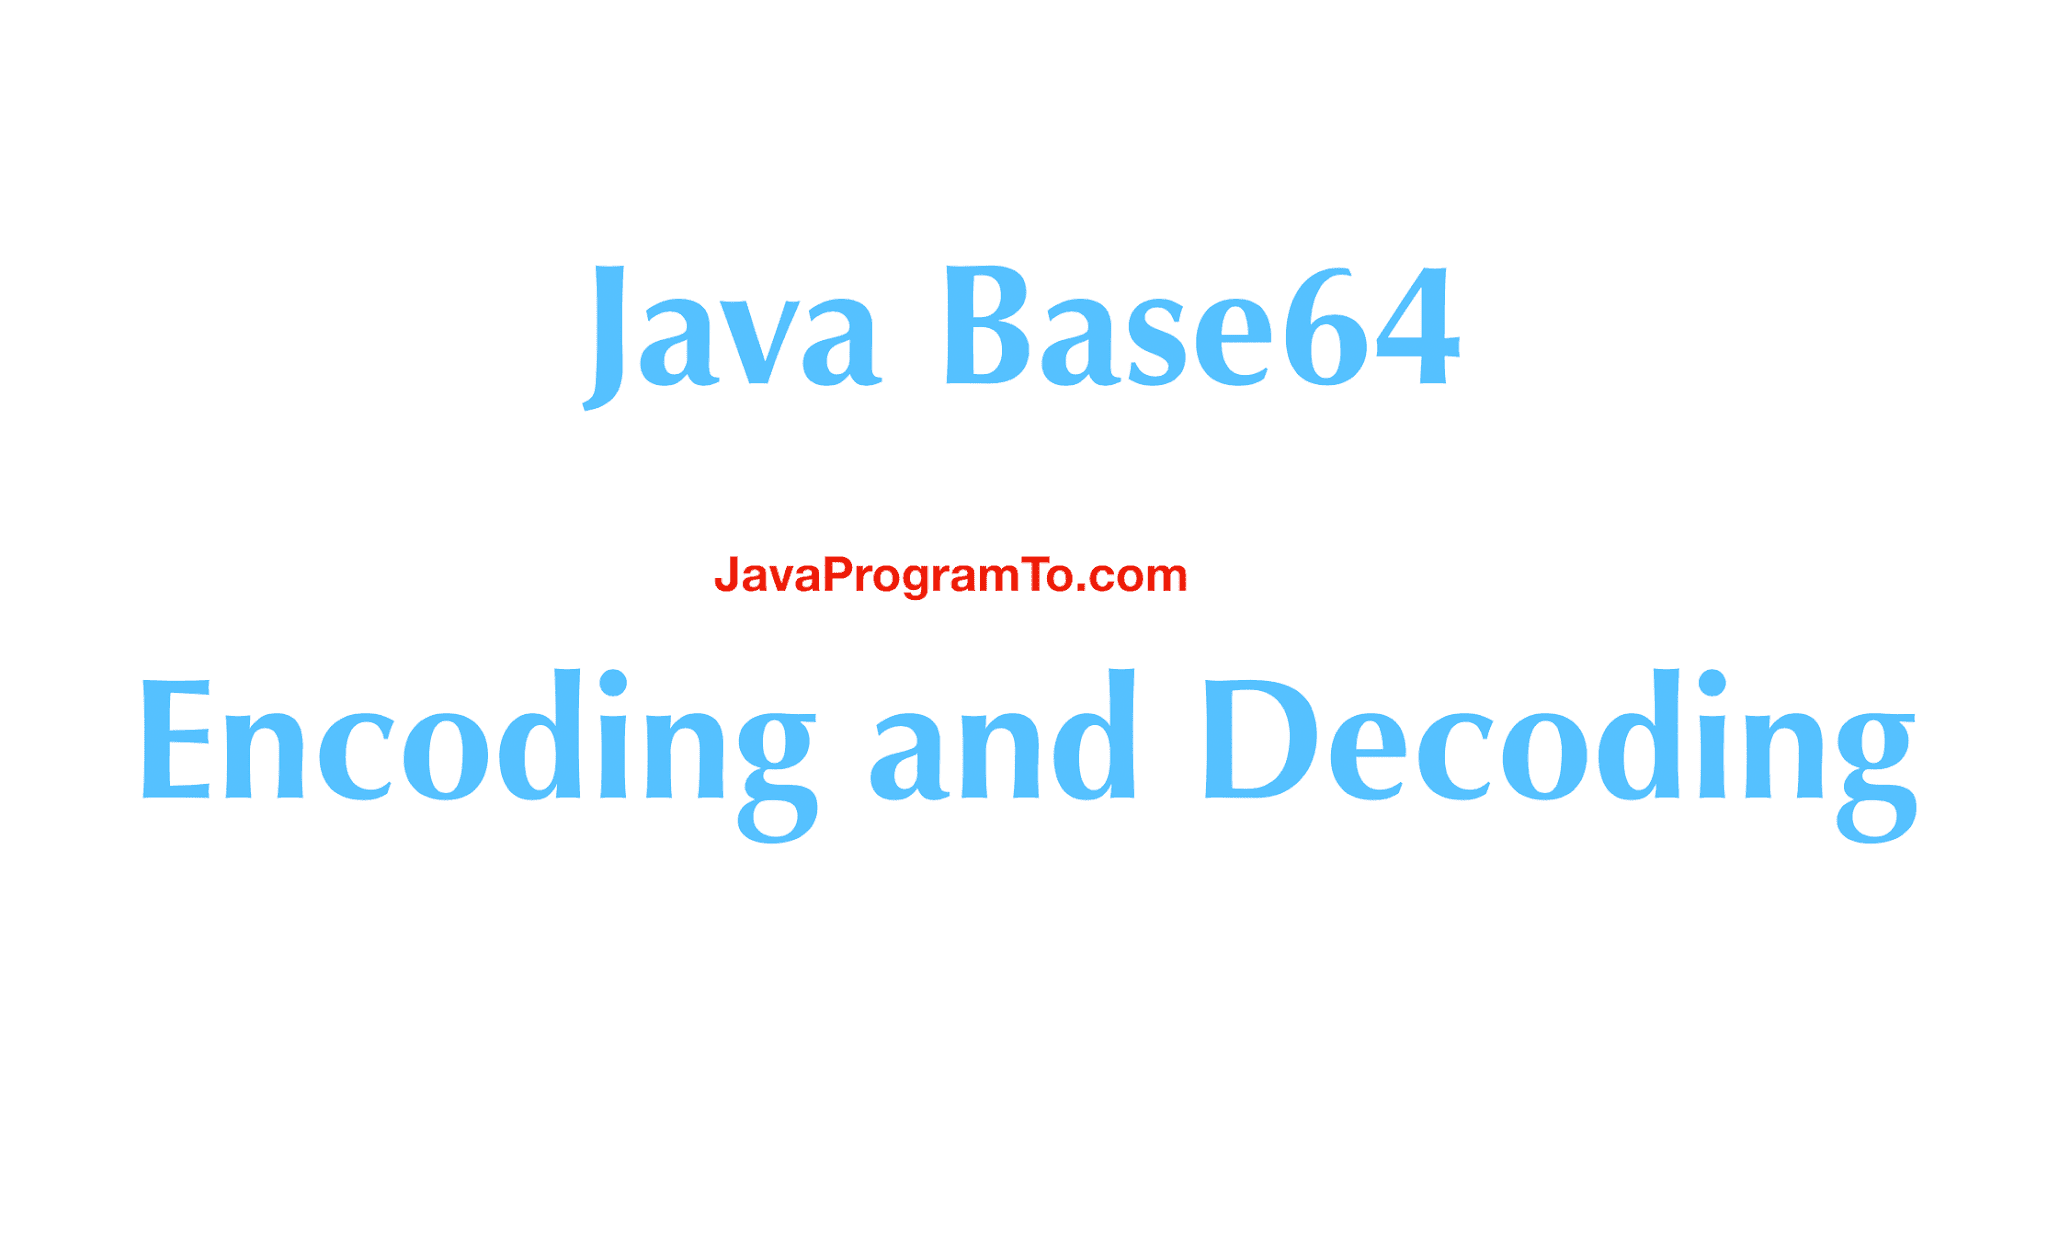 Java base64